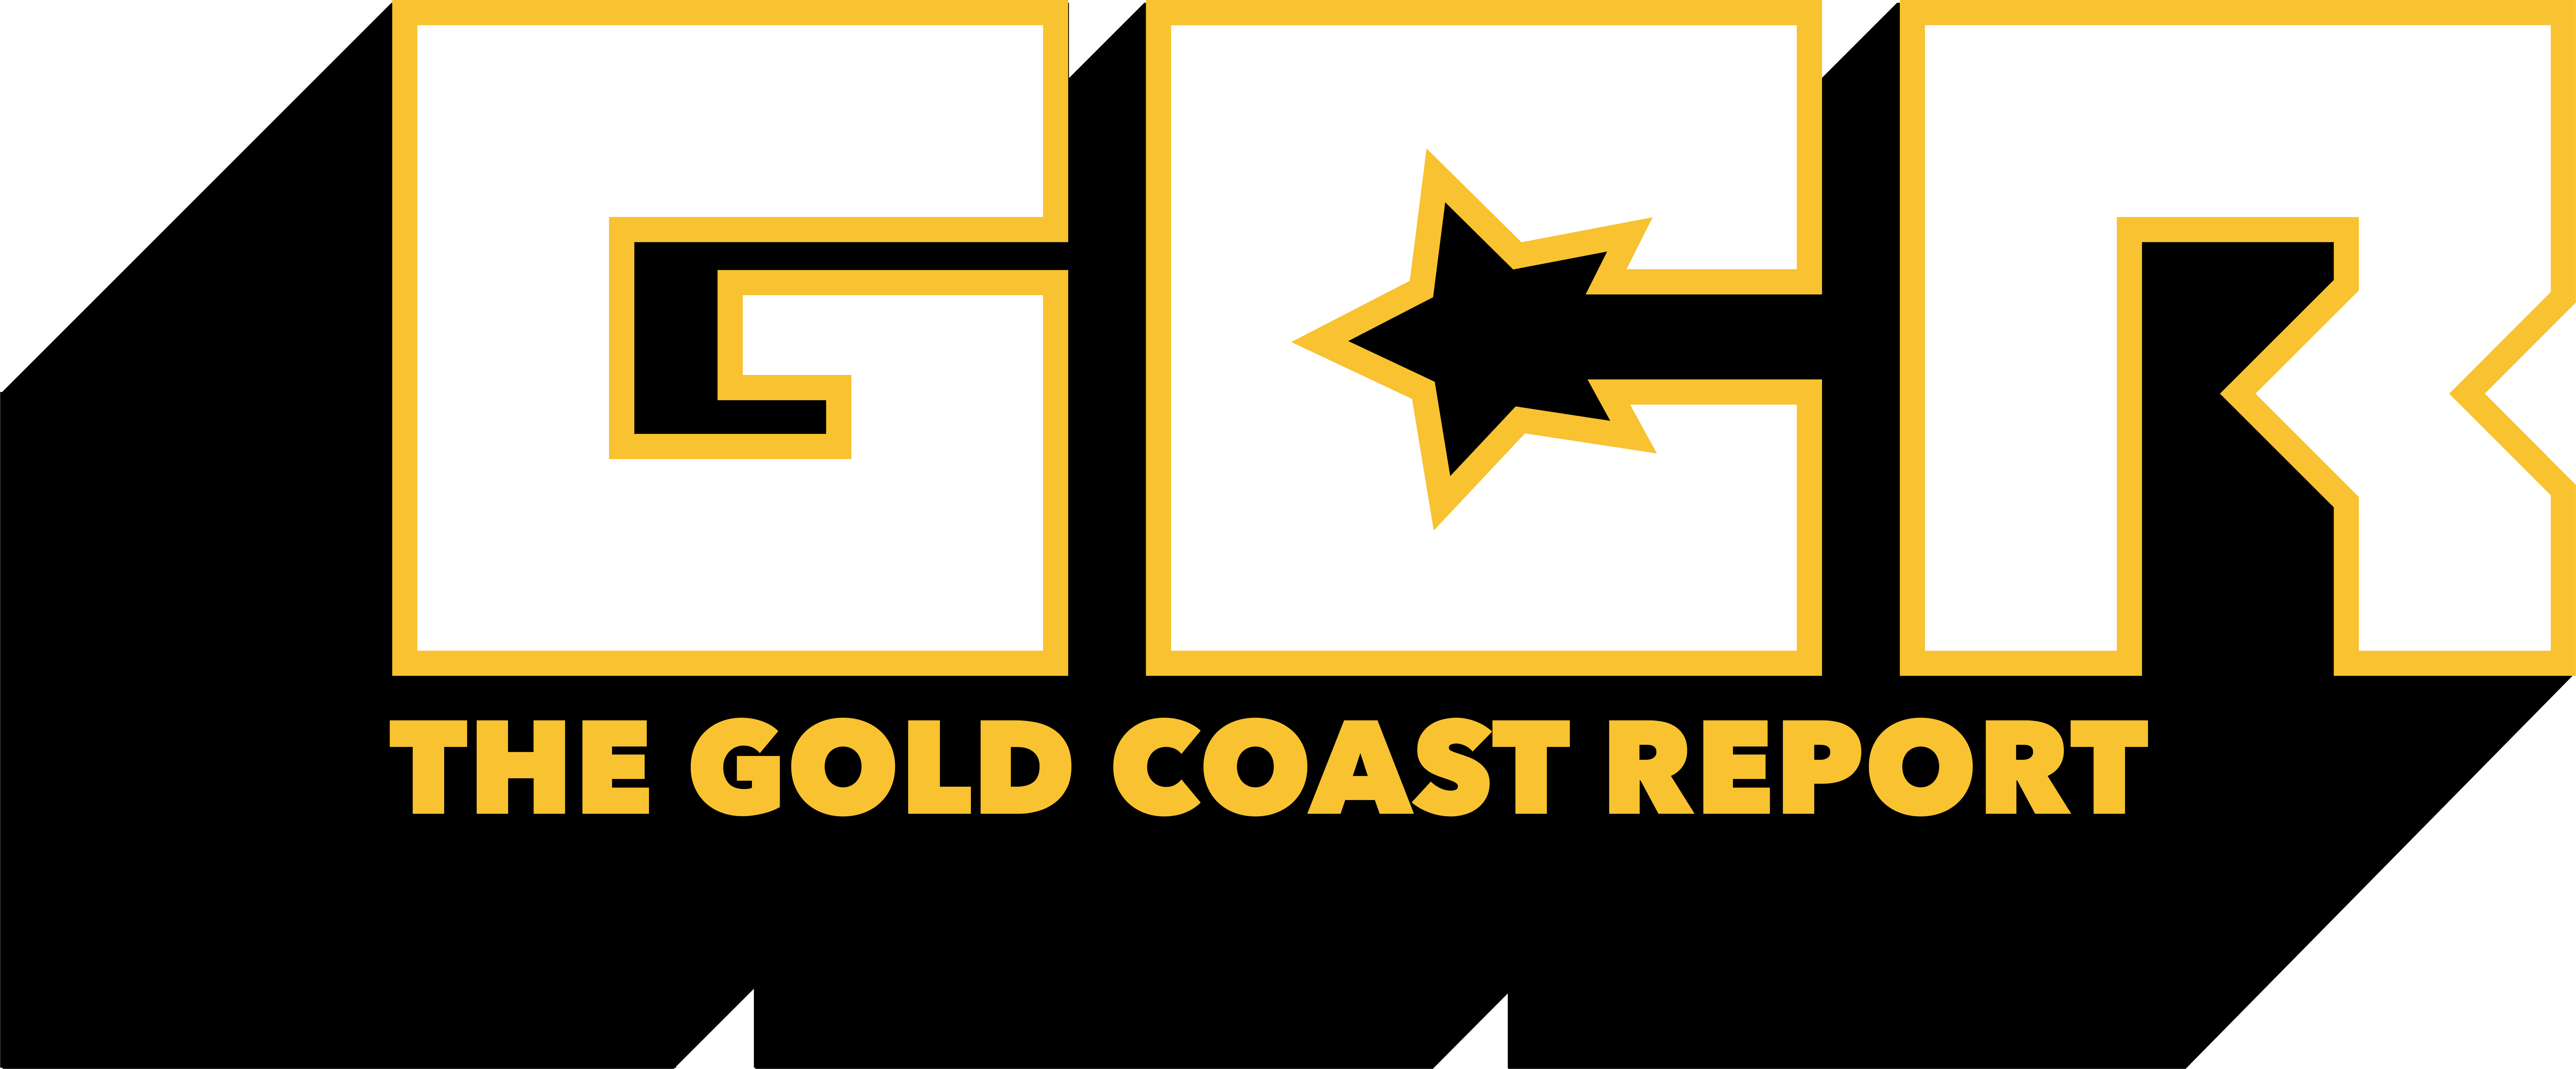 GCR Logo